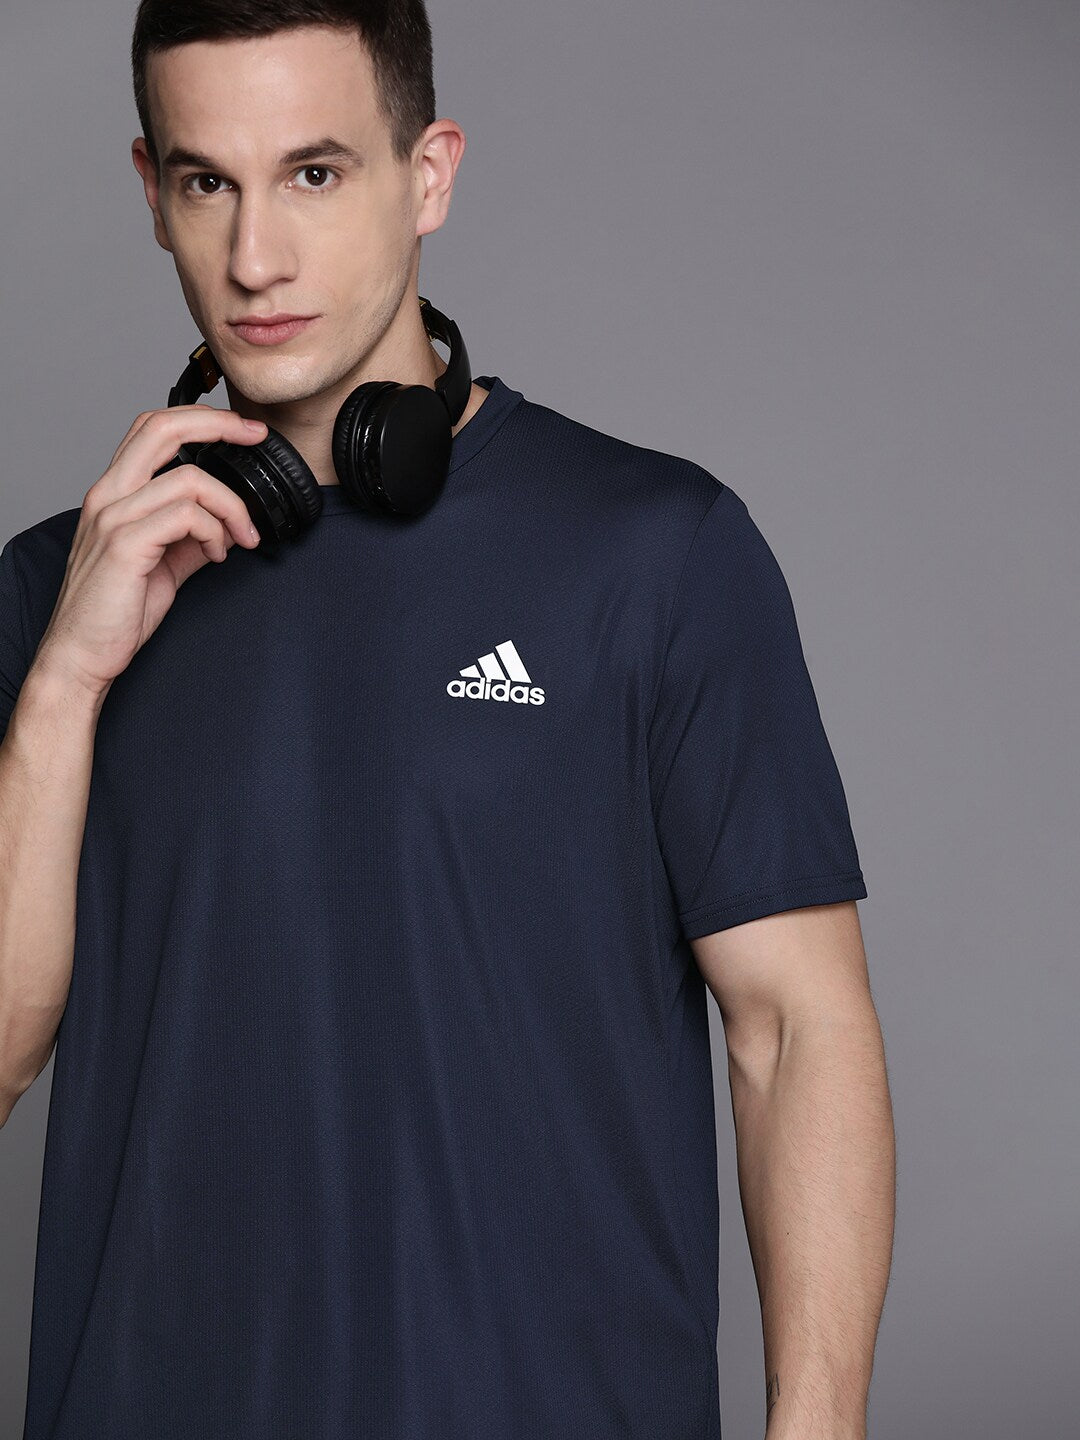 Adidas Men D4M Training T-shirt - Distacart